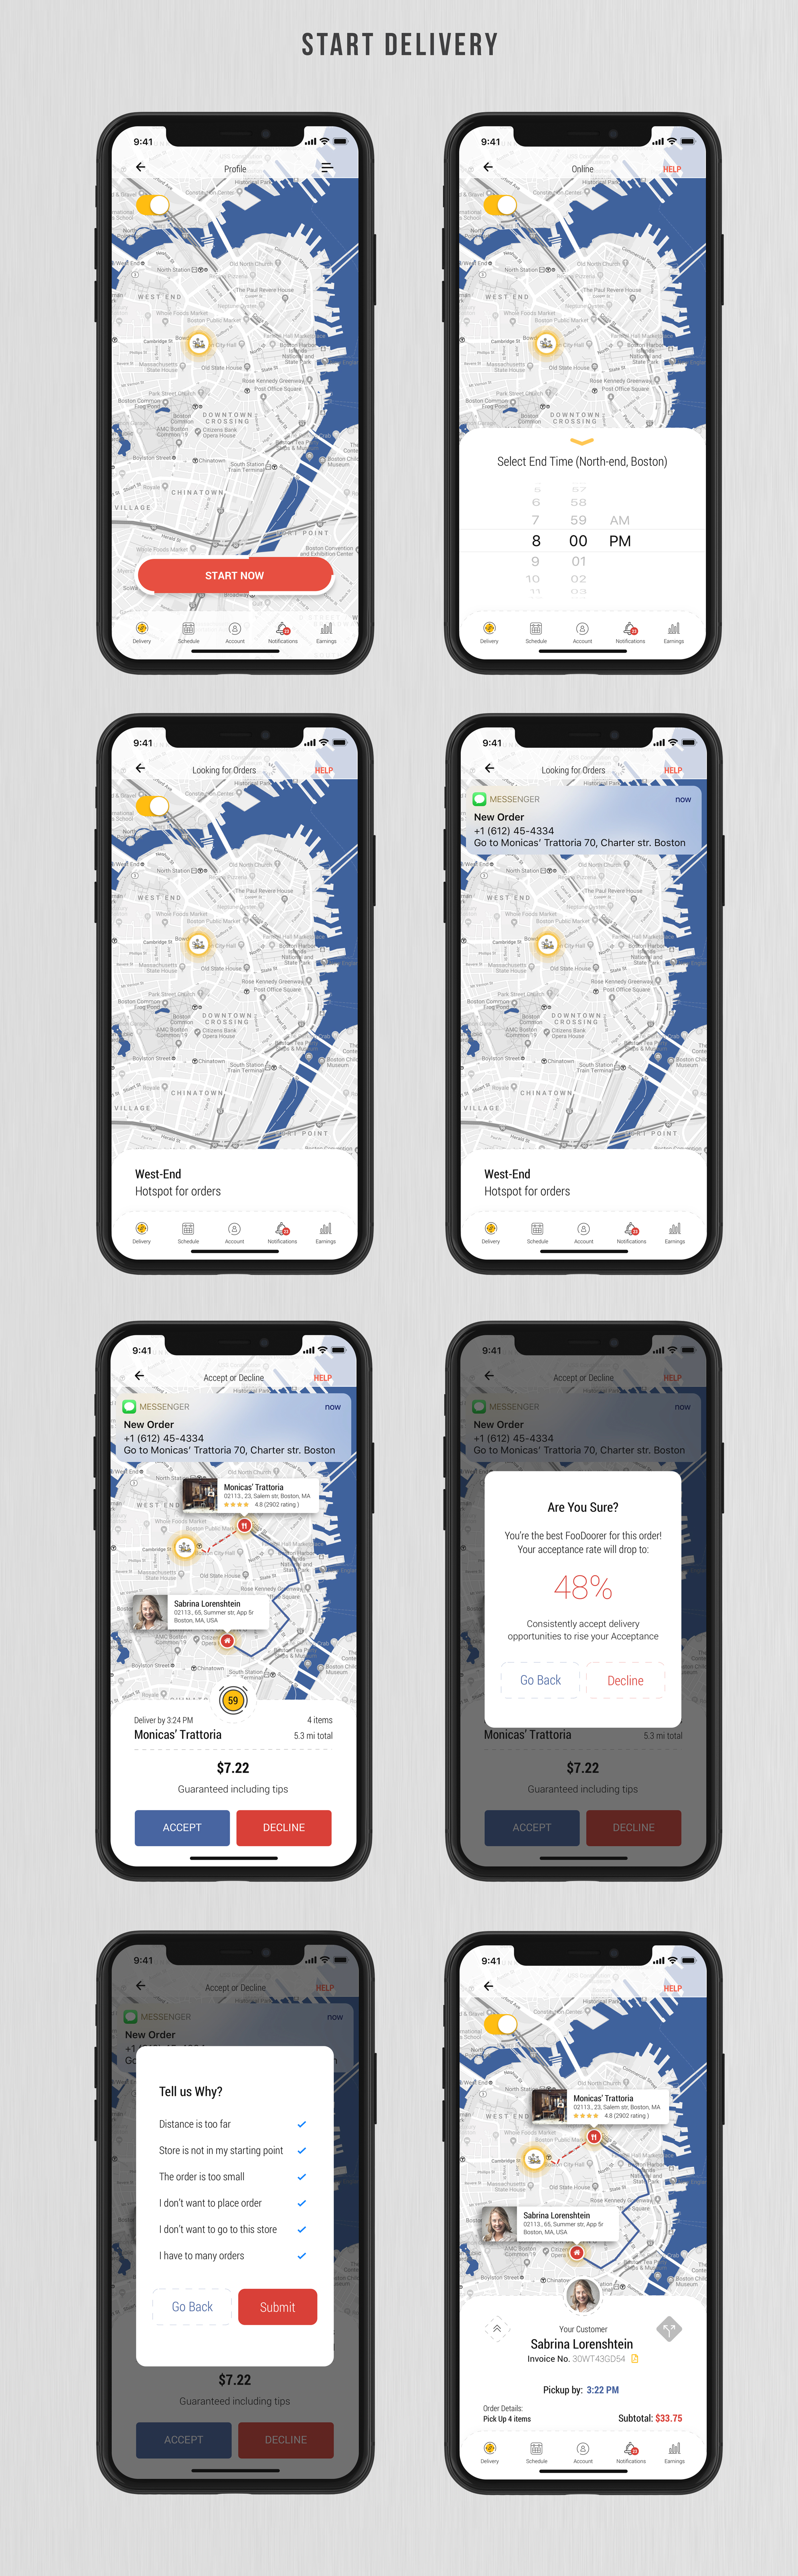 Dobule - Food Delivery UI Kit for Mobile App - 25